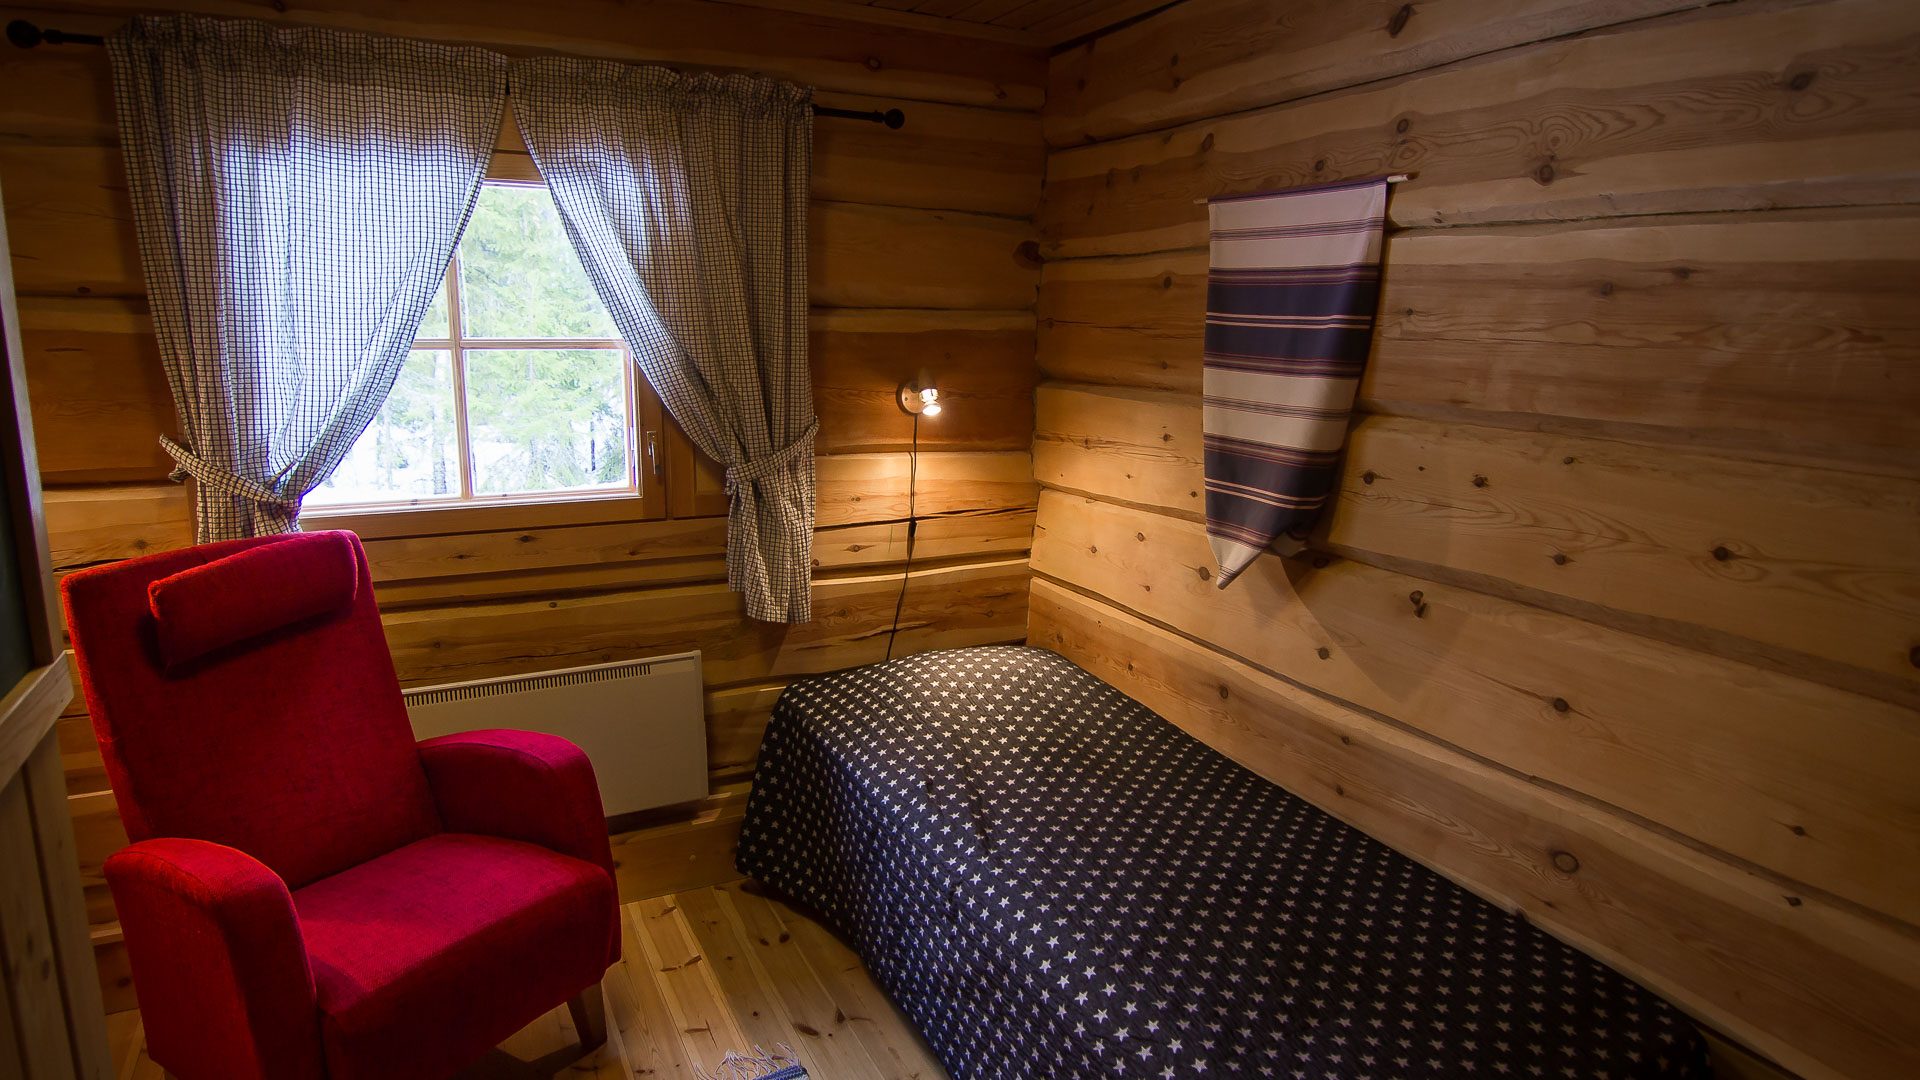 Accommodation / Stella rooms, inside, Arctic Circle Wilderness Resort, Rovaniemi, Villi Pohjola / Wild Nordic Finland @wildnordicfinland